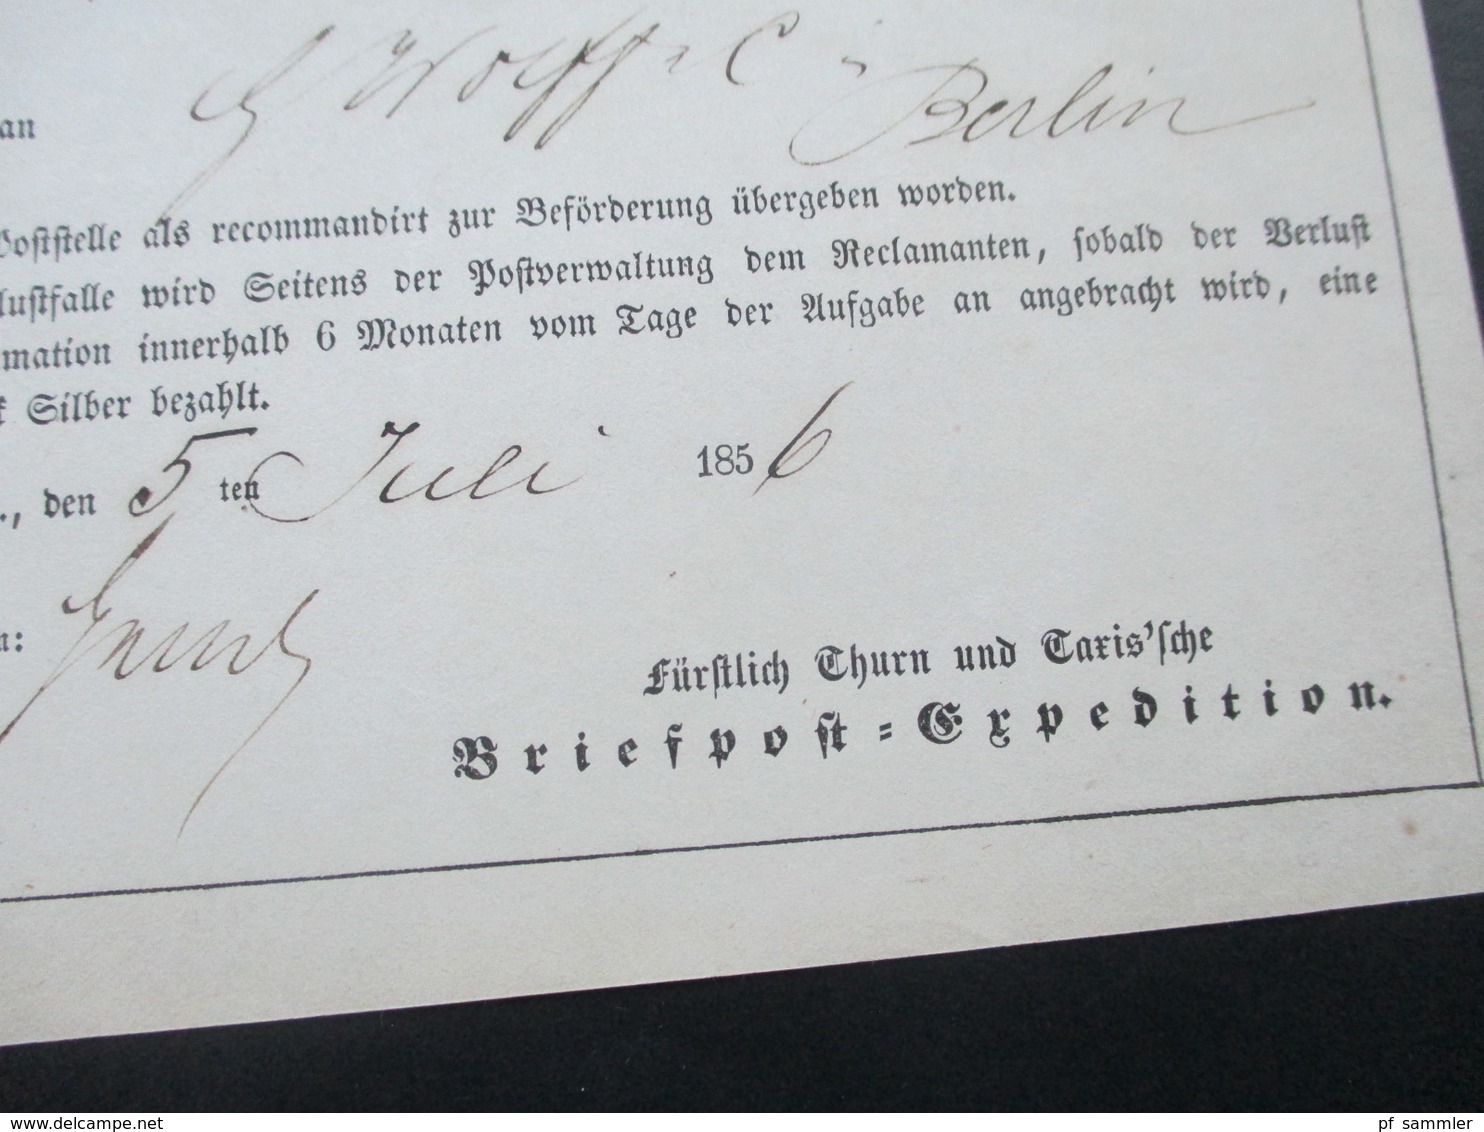 Altdeutschland Thurn und Taxis 1856 Postschein Fürstlich Thurn und Taxis'sche Briefpost Expedition. Reco Gebühr!!